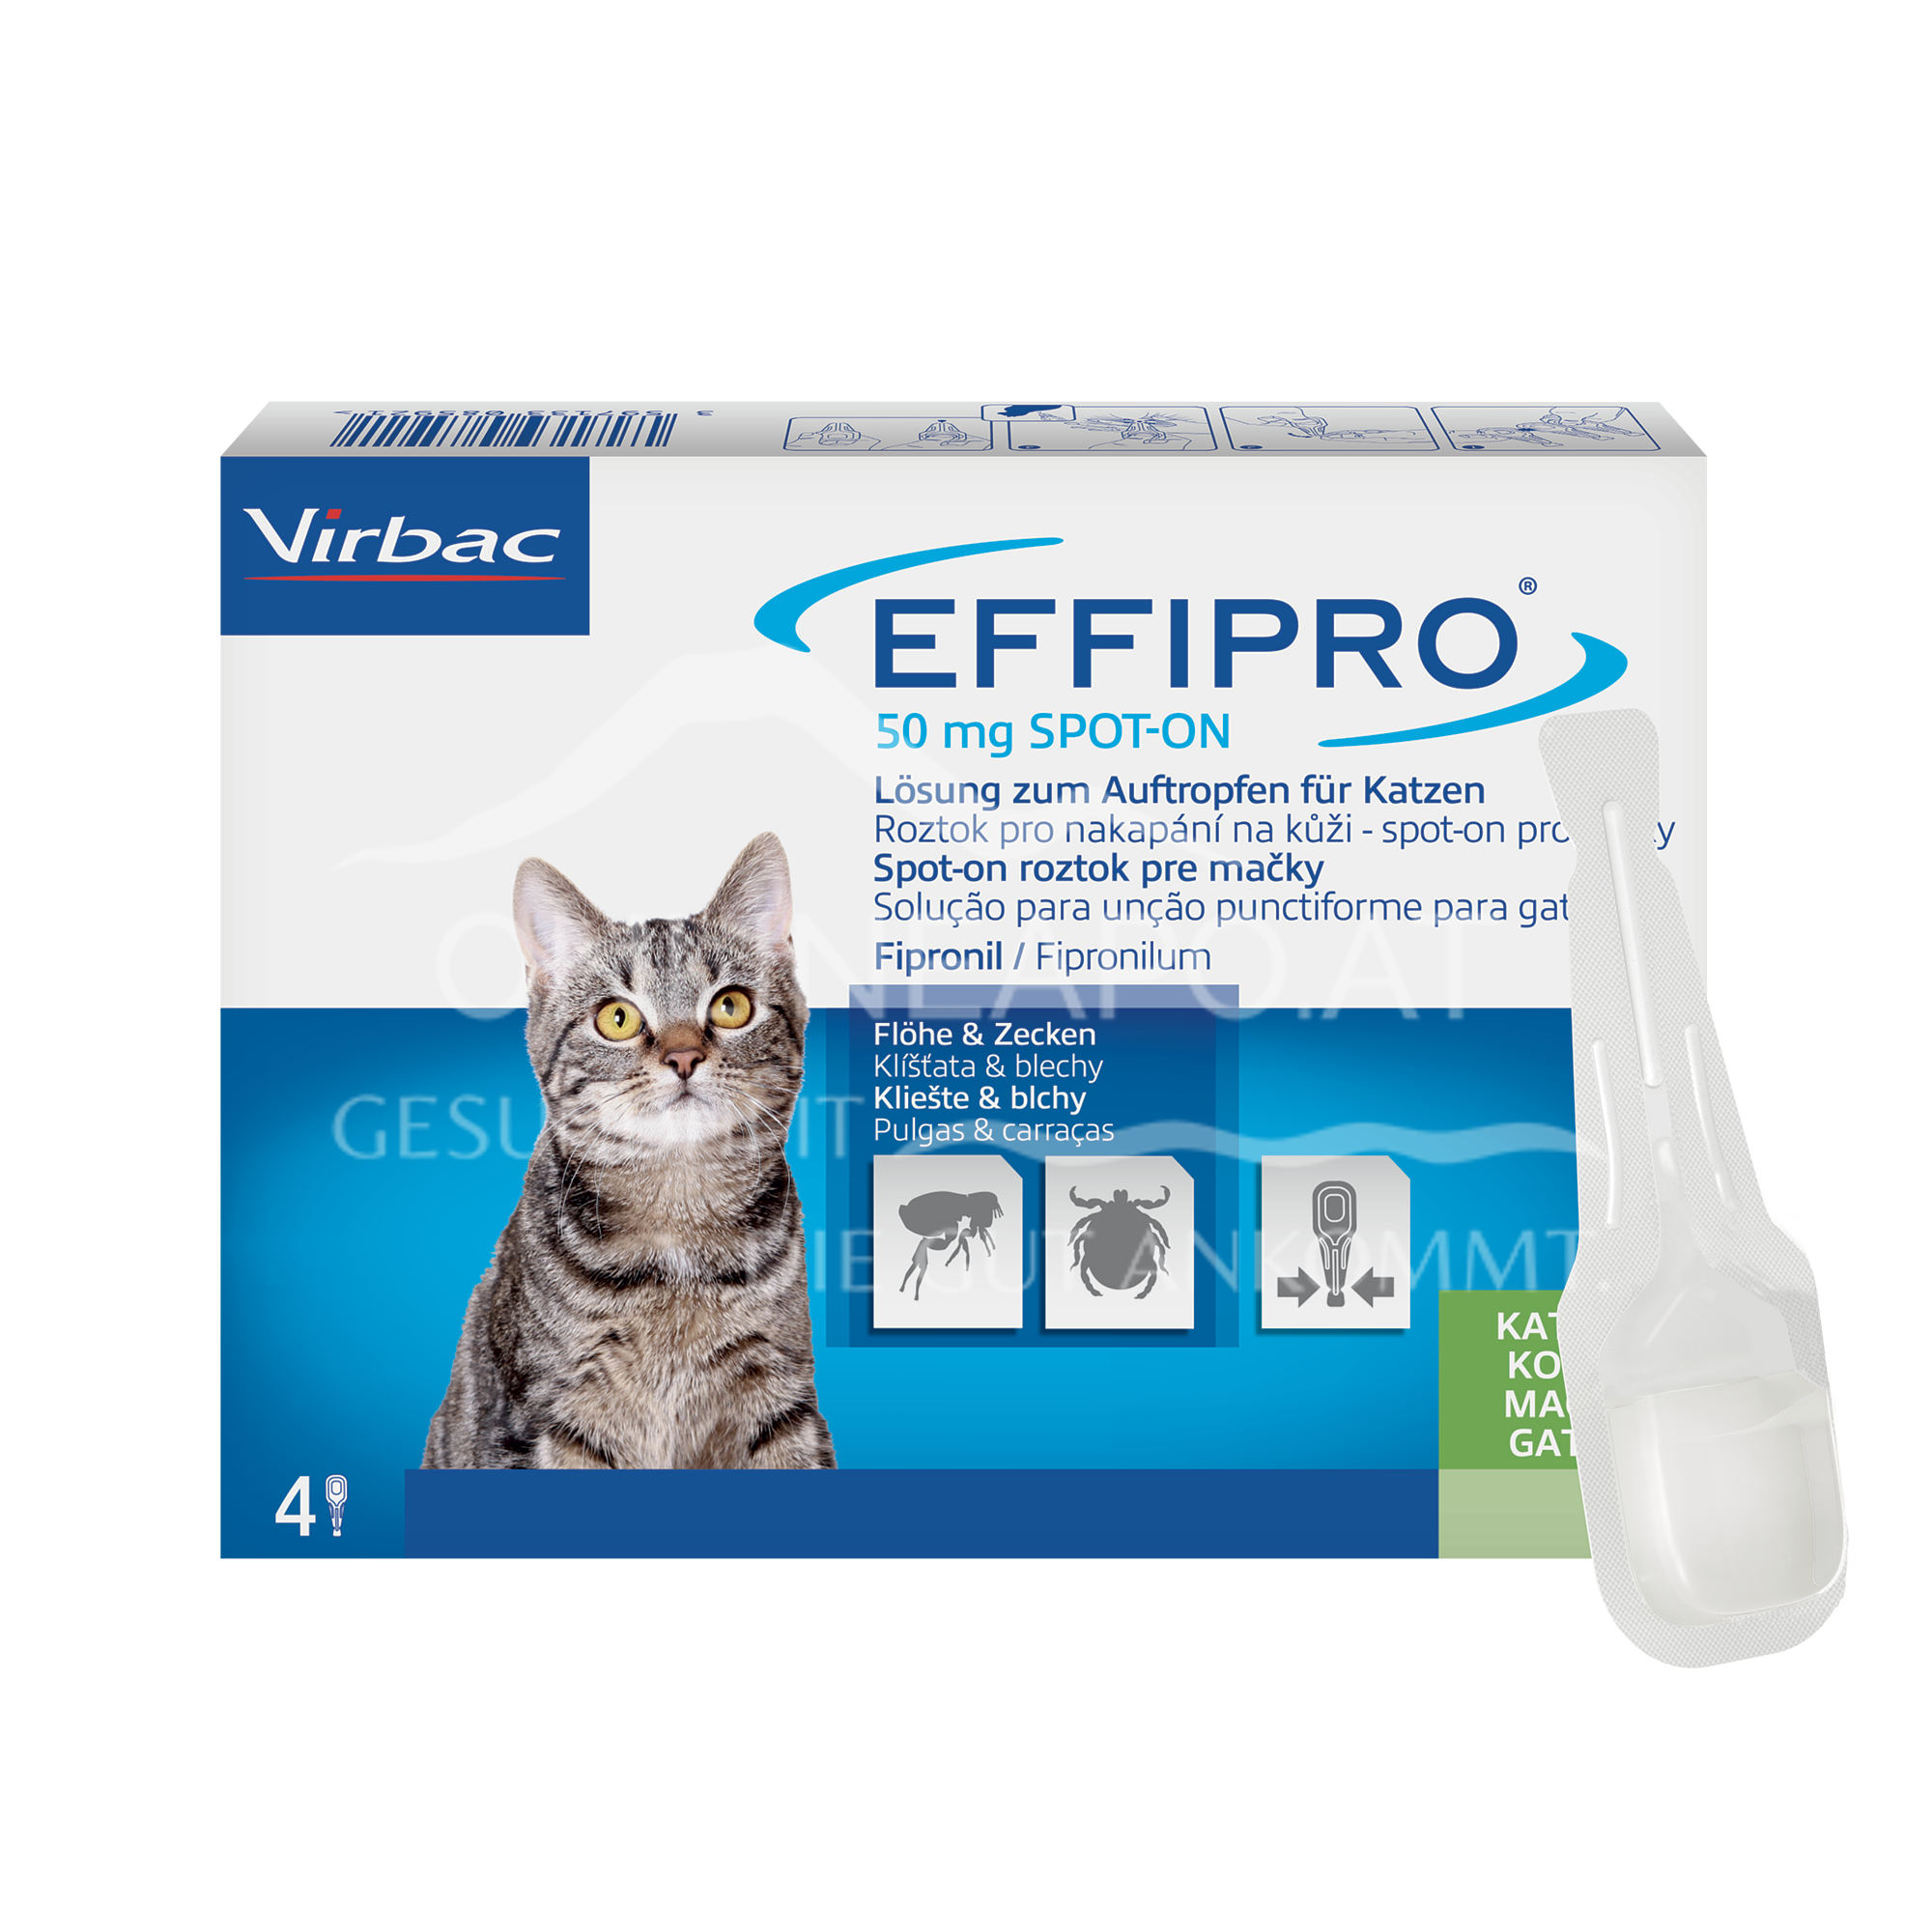 Effipro 50 mg Spot-on Lösung zum Auftropfen für Katzen